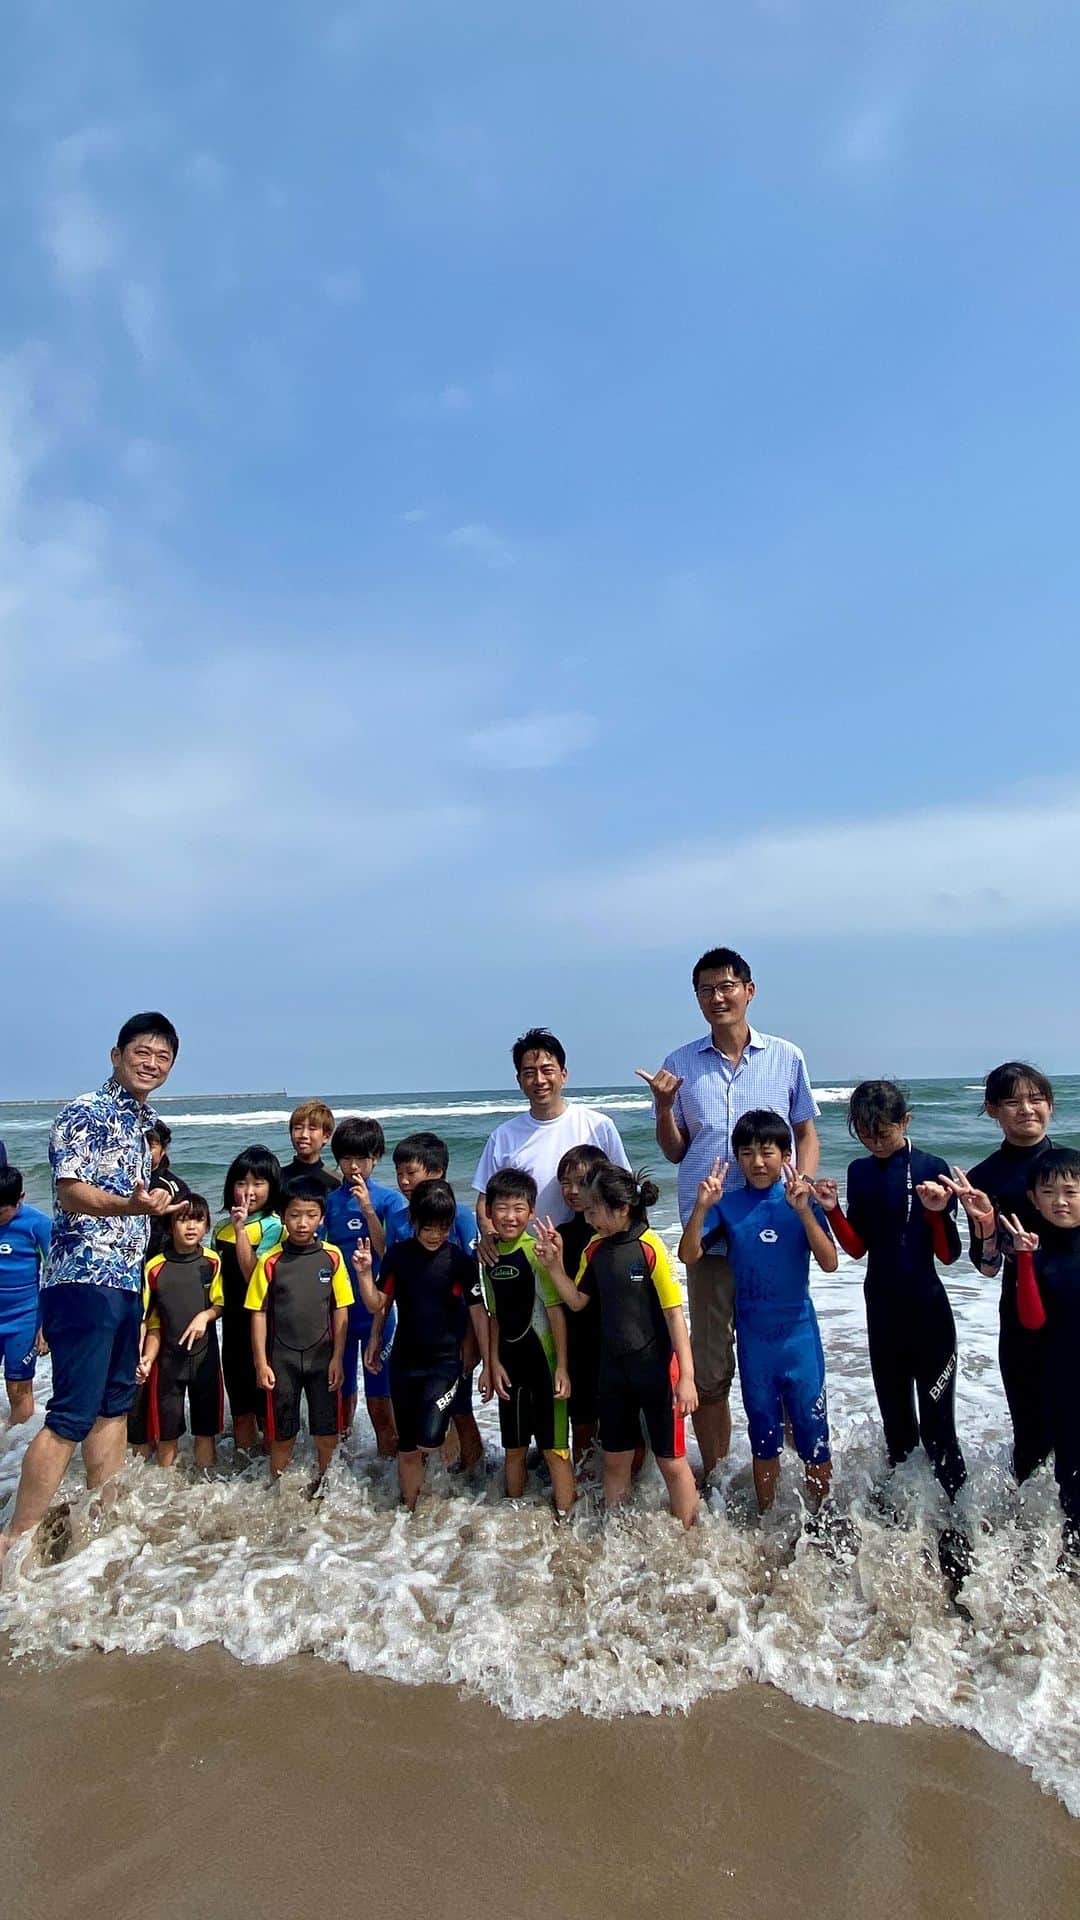 小泉進次郎のインスタグラム：「今日は福島県南相馬市の北泉海岸で開催されたサーフィンイベント「北泉サーフフェスティバル2023 福島復興支援ビーチイベント」に参加し、福島の子どもたちとのビーチクリーンや海遊びを楽しみました（私はイベントのアンバサダーをお引き受けしました）。  処理水放出後だからこそ開催する意義がある！という強い想いで準備・運営された南相馬市の室原さんをはじめとする実行委員会のみなさんの気持ちに応えるべく、自民党サーフィン議連の勝俣衆議院議員と朝日参議院議員に加え、海洋プラスチックごみ対策を進める「大阪ブルー・オーシャン・ビジョン推進議連」のメンバーの笹川衆議院議員と高村衆議院議員とともに参加。  フランスとオーストラリアからもサーファーが参加してくれたことも、会場に福島県外からも来場者がいてくれたことも良かったです。  モデル・タレントの西山茉希さんもこどもたちとのサーフィンに参加するなどされていました。  地元の漁協の支所長さんが目の前の海で獲ったヒラメやホッキ貝も、南相馬のキュウリも、本当に美味しかったです（取材に来てくれたメディアの皆さんや来場者の皆さんとも一緒に頂きました）。  処理水の放出直後の今はメディアや世の中の関心は高いですが、これから何十年も続く処理水放出の中で関心が低下するのは間違いありません。それは仕方ないことなので、今だけではなく、これからも継続して関わっていくことが大事なことだと思っています。室原さんに作ってもらったメイドイン福島のサーフボードは今だけの支援ではなく、「継続」を形にしたものです。みなさんも、自分自身に合った形で、永く継続できる福島への応援の方法を見つけて実践してもらえたら嬉しいです。  とにかく、子どもたちが波打ち際で楽しそうにしている姿は最高でした！  福島の海は今日も綺麗でした（ビーチクリーンも、予想外にゴミが少ない綺麗な砂浜でした）。  #北泉海岸 #北泉サーフフェスティバル #福島県 #南相馬市 #ビーチクリーン #西山茉希 #常磐もの #ヒラメ #きゅうり #笹川博義 #朝日健太郎  #高村正大  #勝俣孝明  #自民党 #サーフィン議連 #大阪ブルーオーシャンビジョン #自民党福島県連 #小泉進次郎」